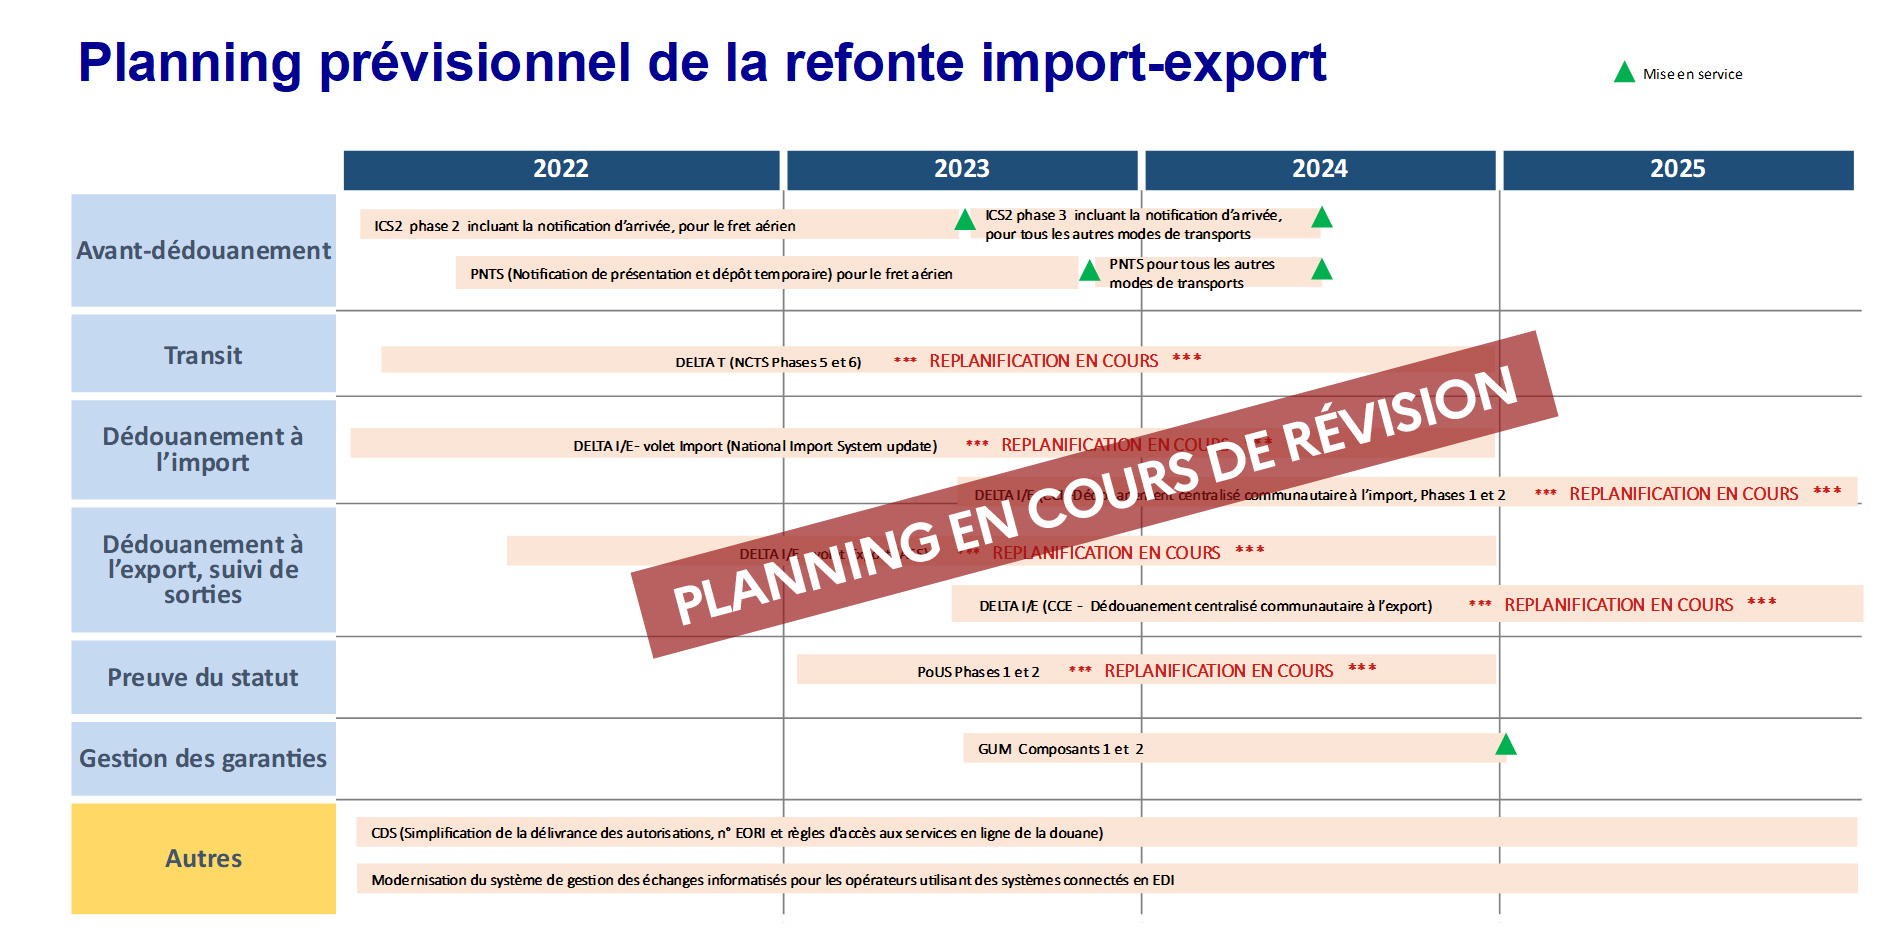 Planning prévisionnel de la refonte import-export - EN COURS DE RÉVISION